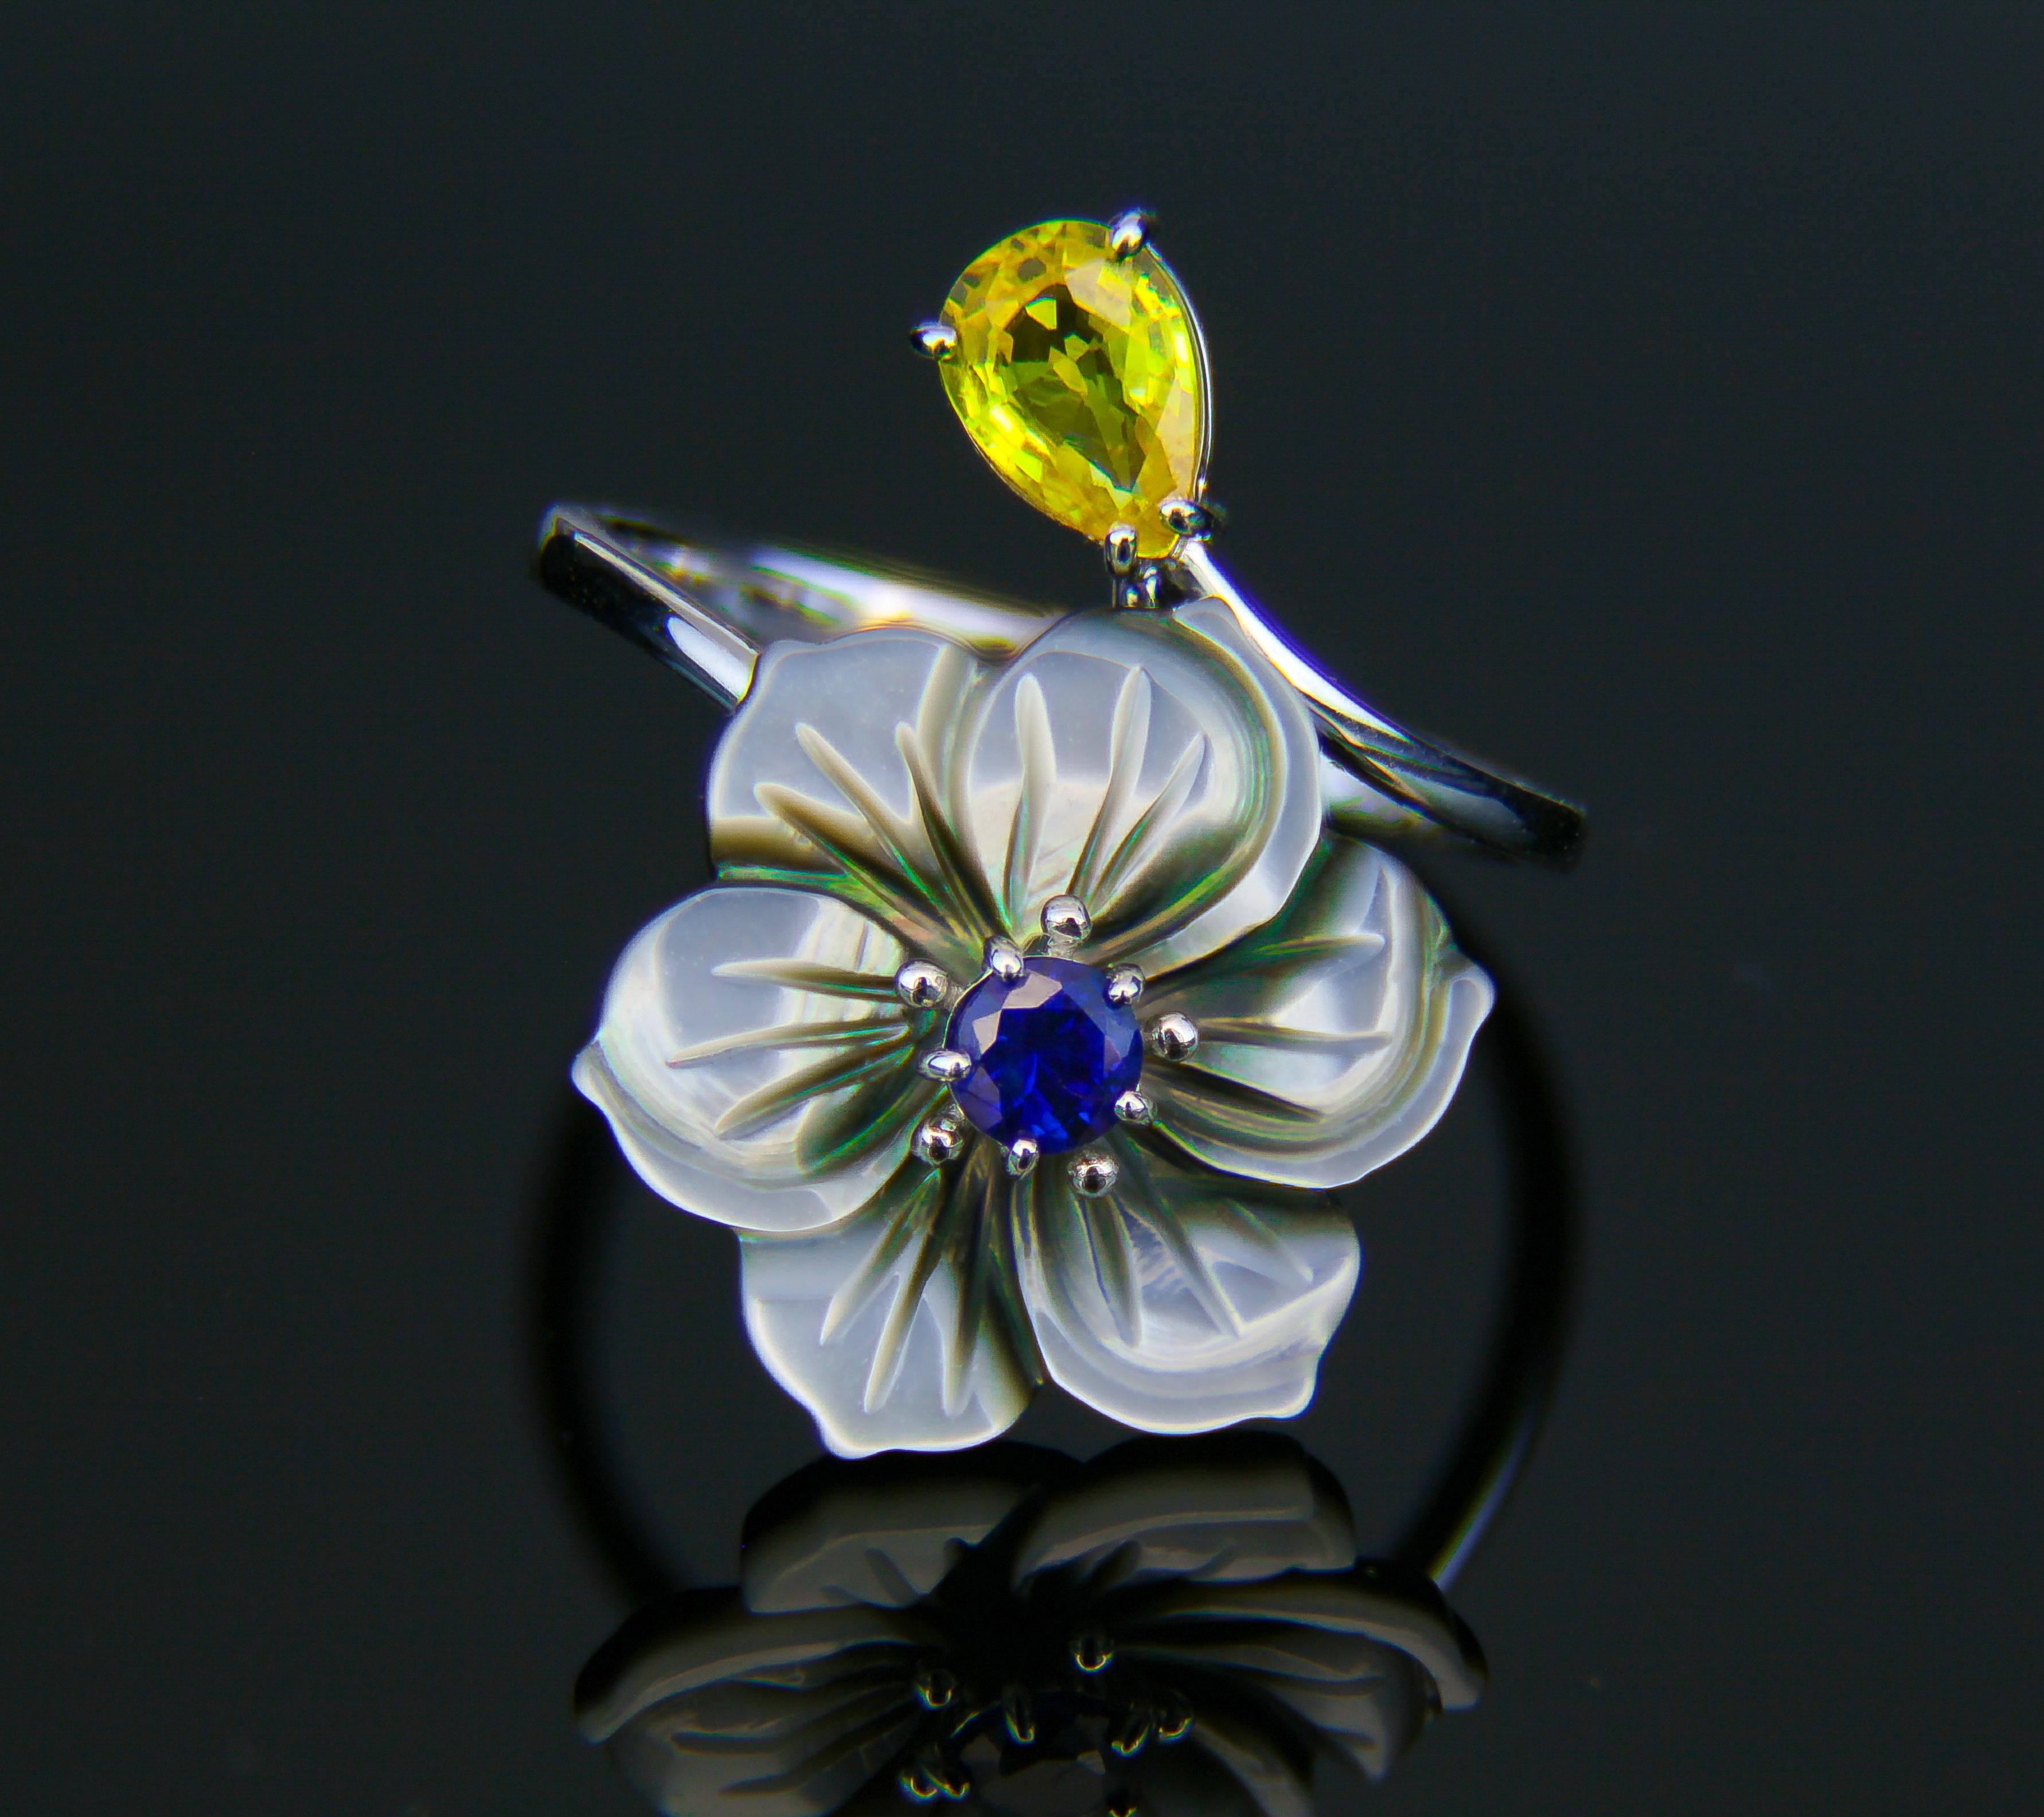 Carved Flower 14k ring with gemstones 2